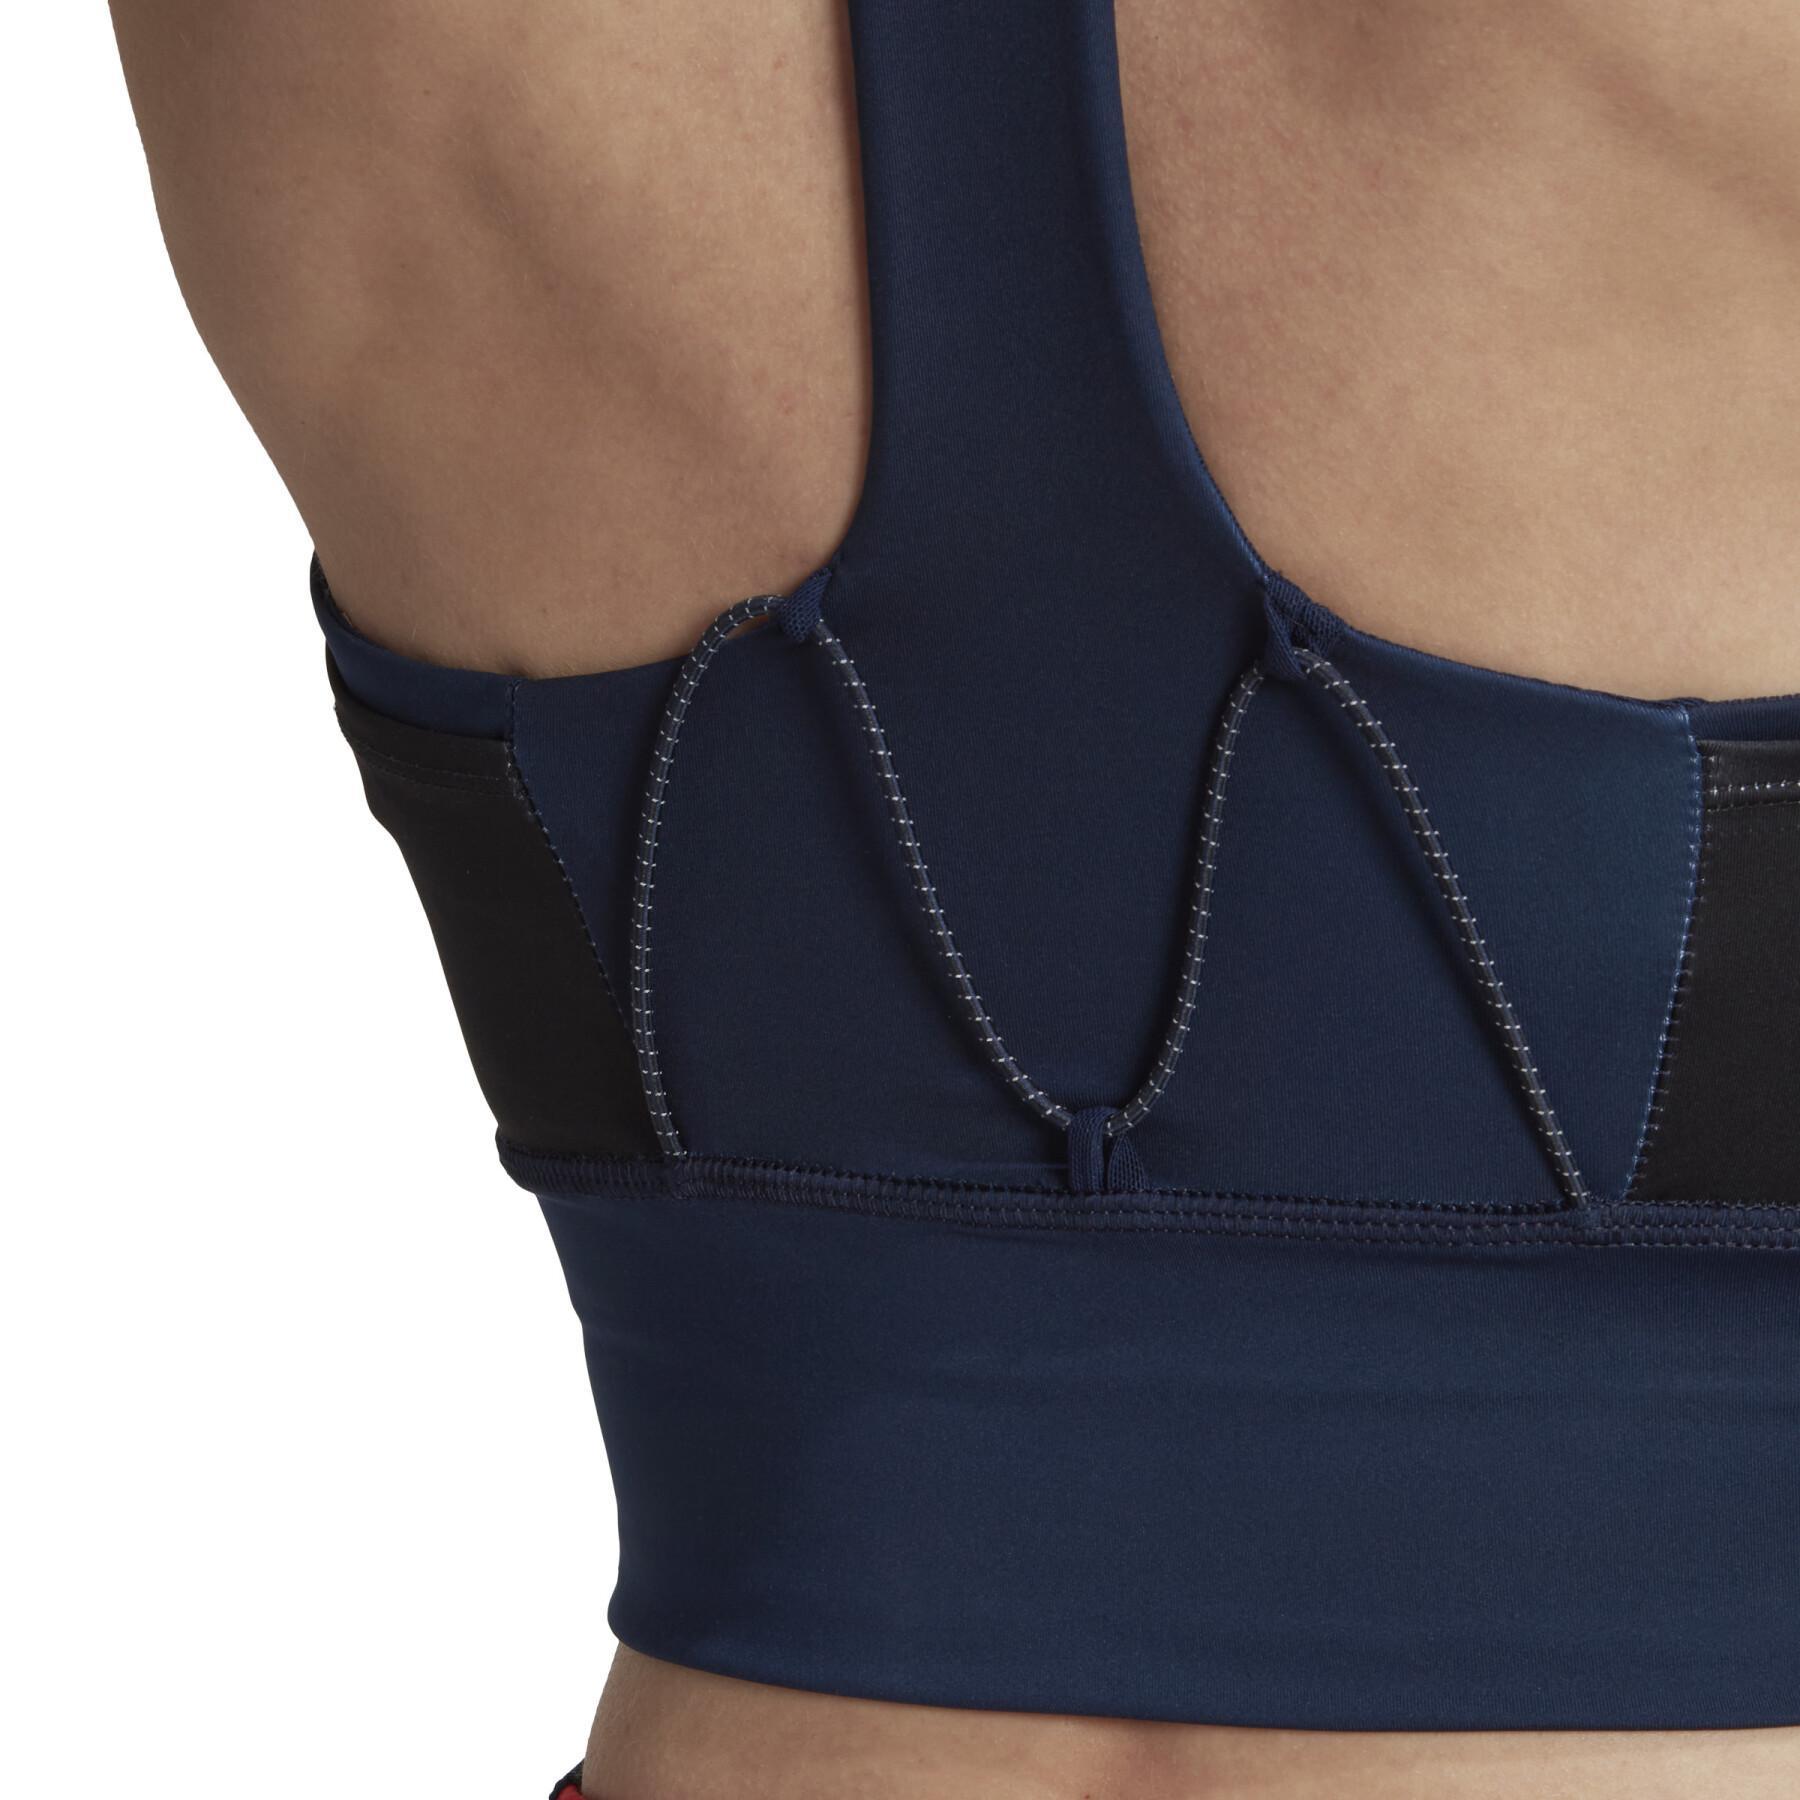 Women's medium support pocket bra adidas Marimekko